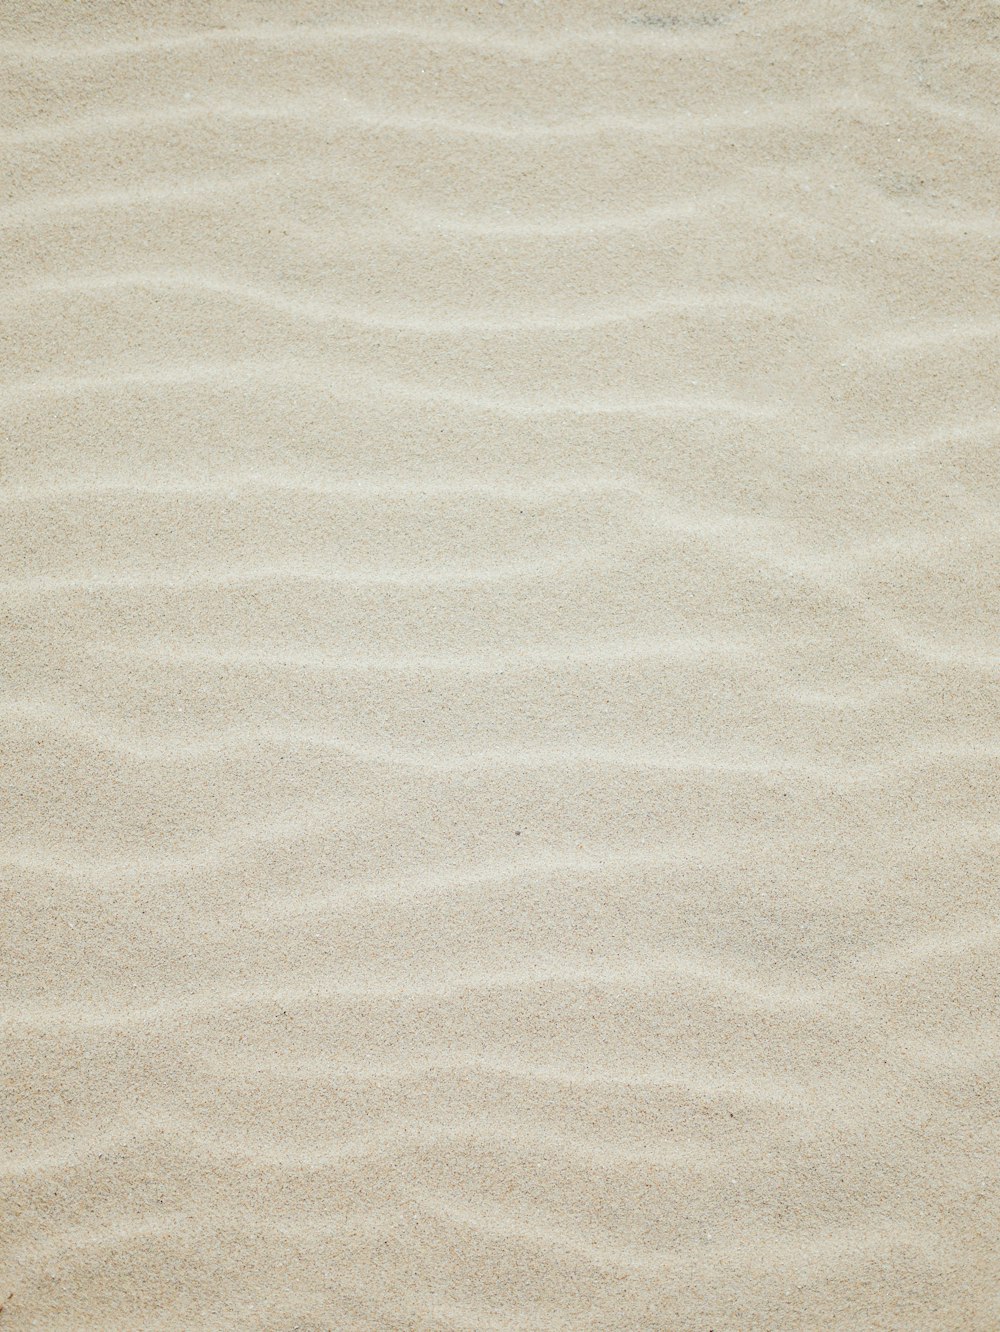 500개 이상의 모래 질감 사진 [Hd] | Unsplash에서 무료 이미지 다운로드